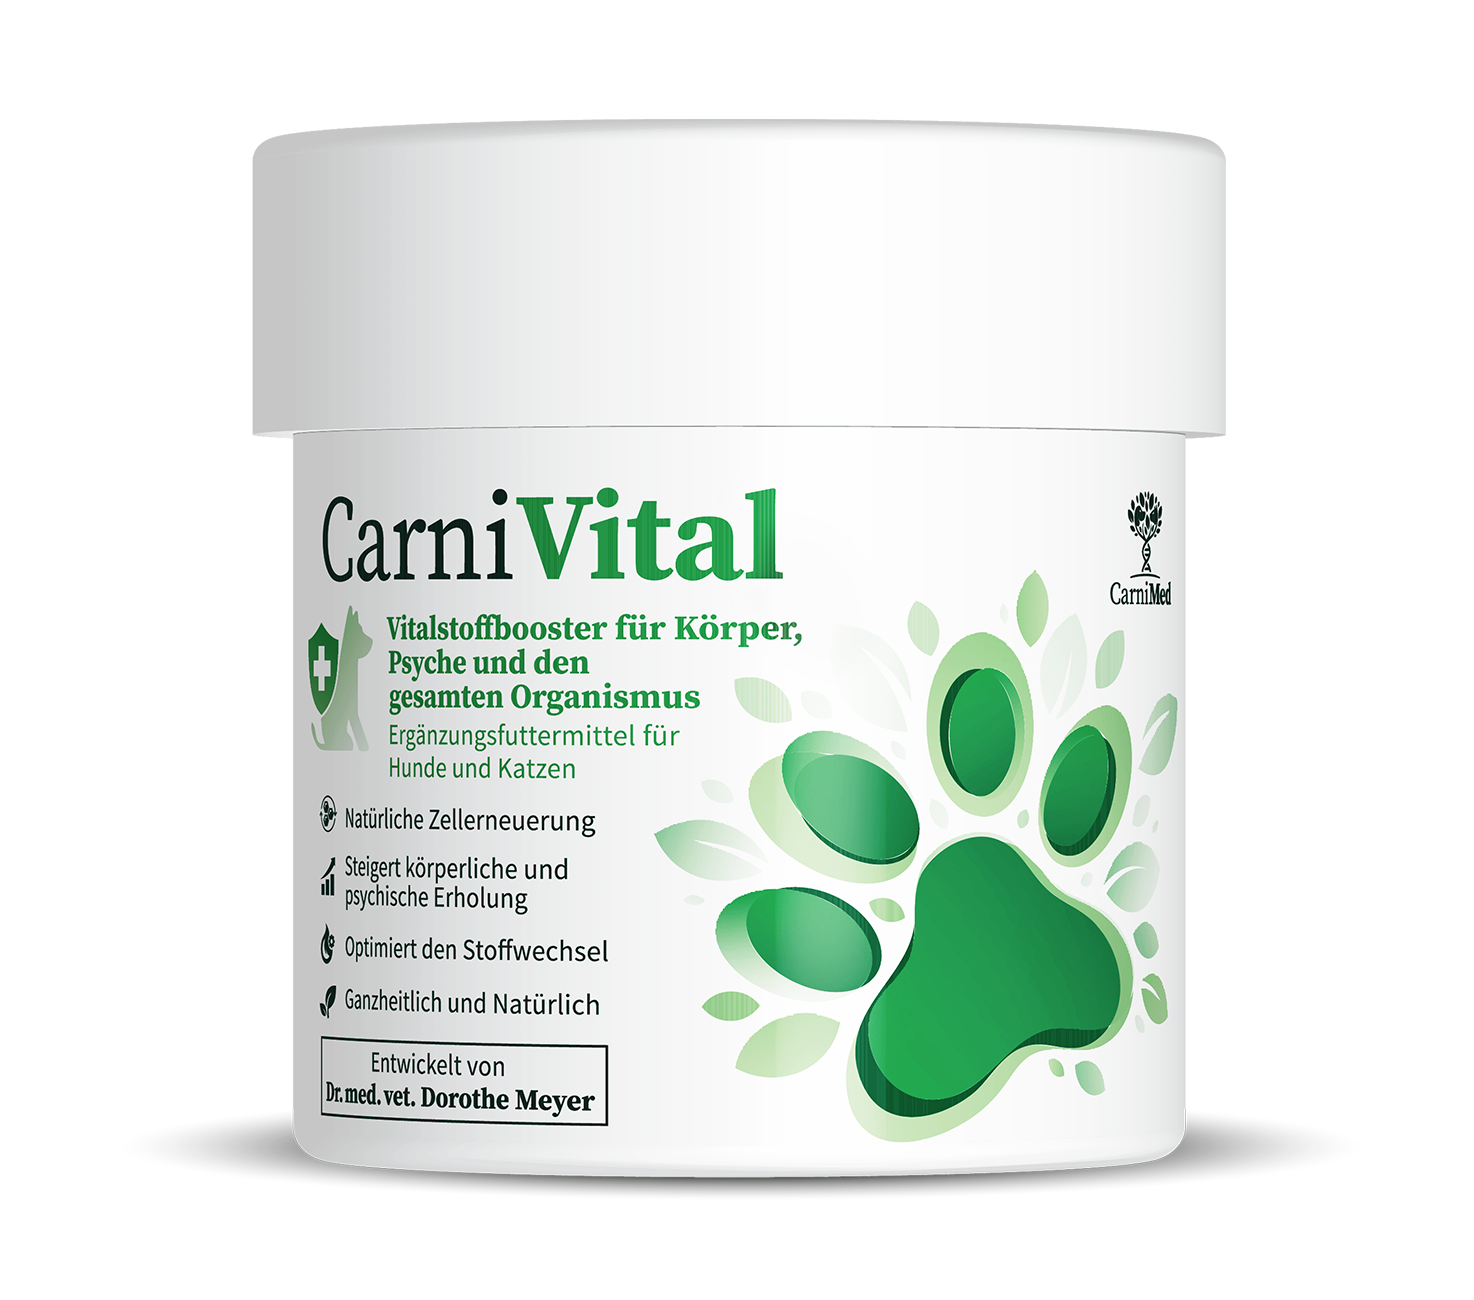 CarniVital - Vitalstoffbooster für Körper und Psyche